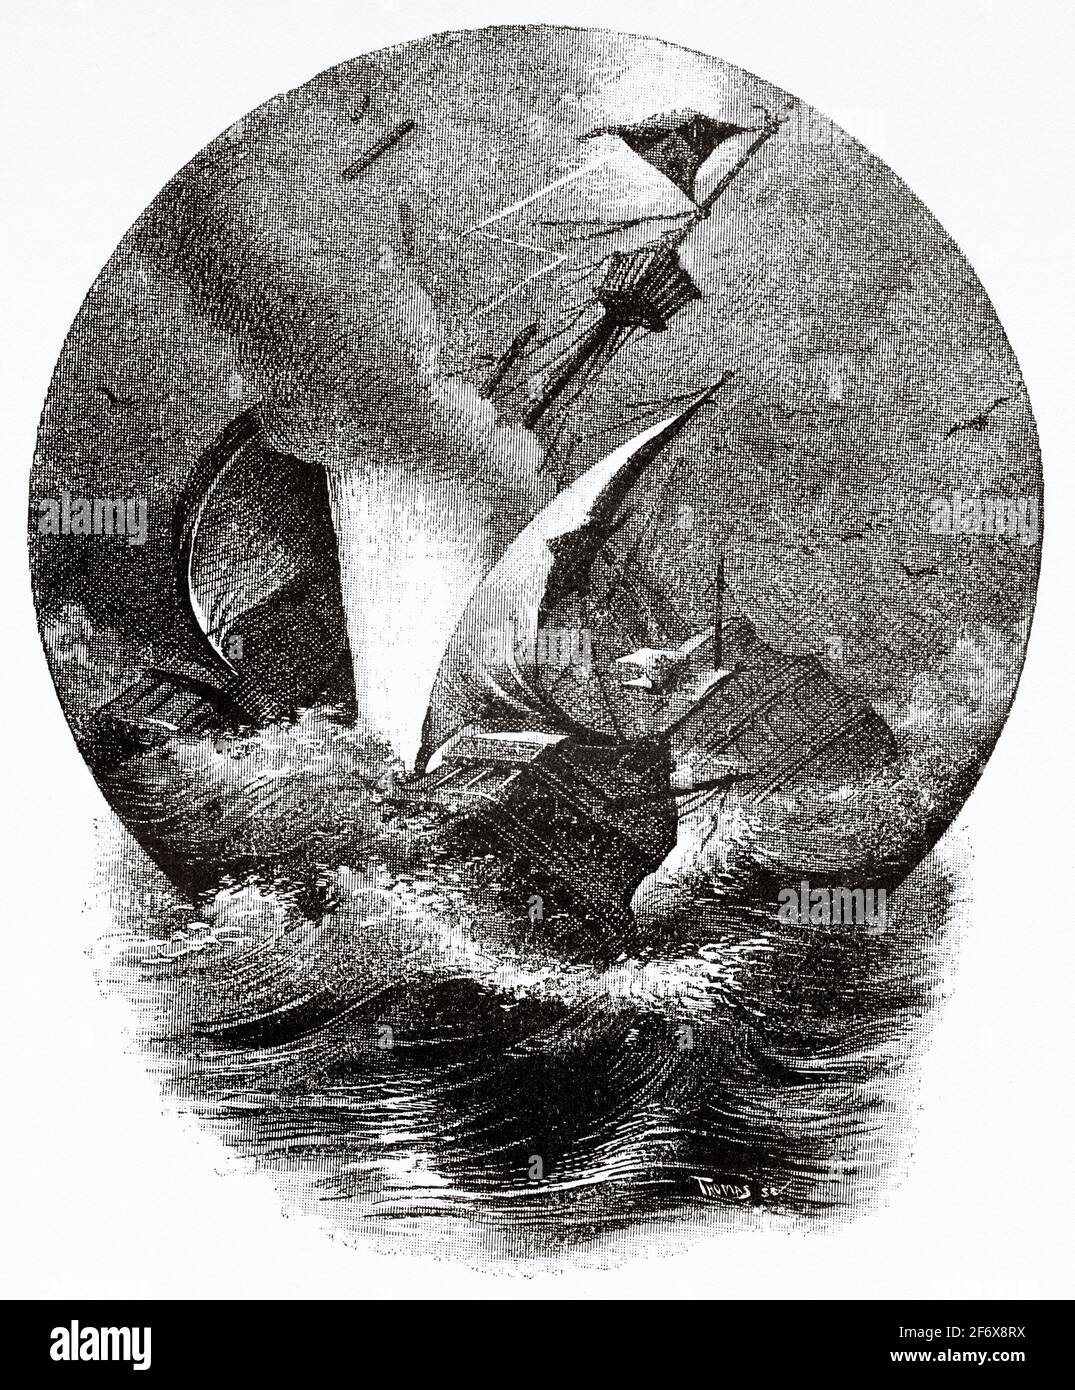 Un uragano affondò la caravella Santa María di Cristoforo Colombo nel 1492. Antica illustrazione del 19 ° secolo inciso da El Mundo Ilustrado 1879 Foto Stock